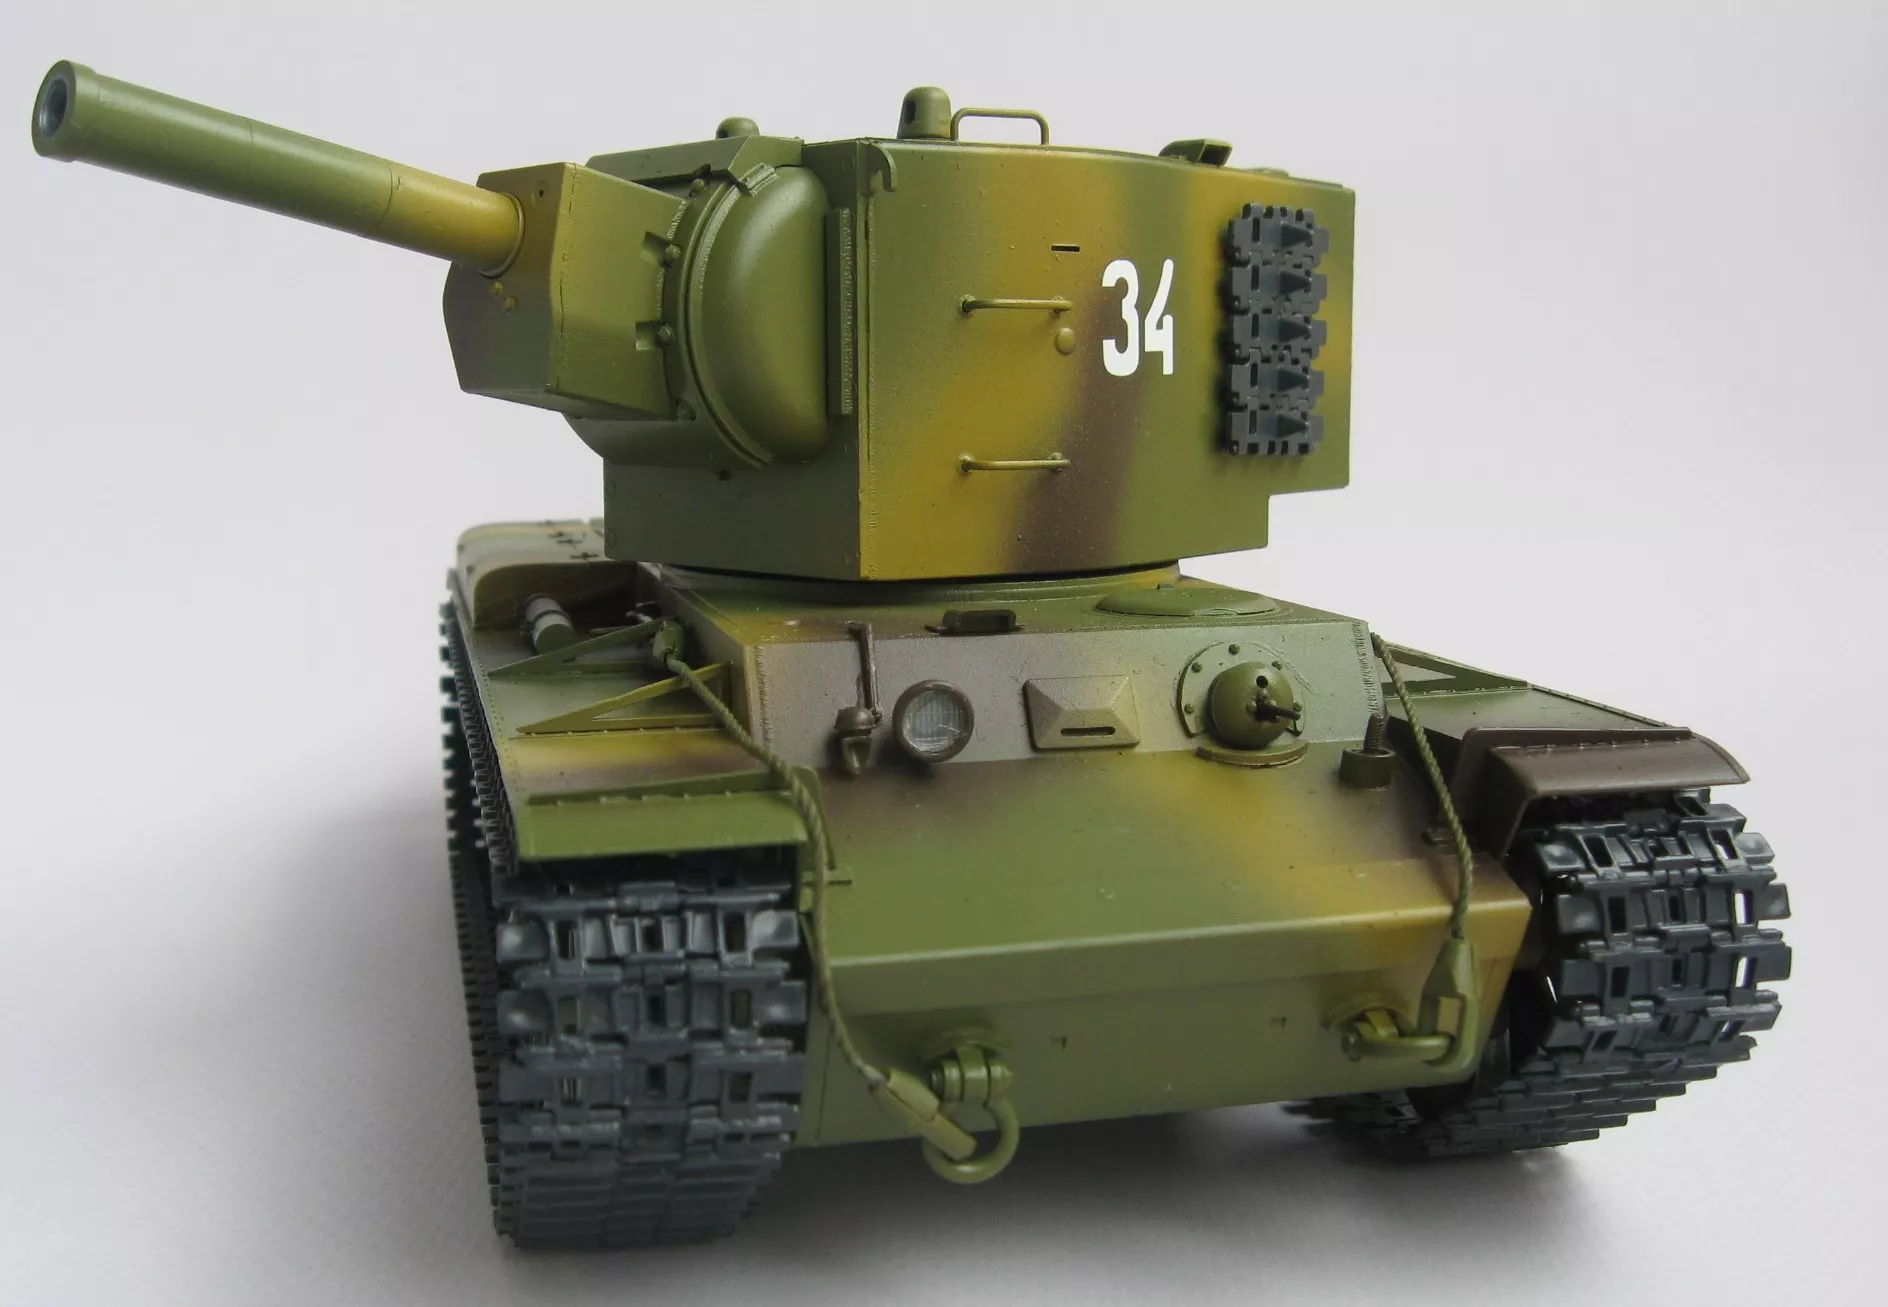 Советский тяжелый танк КВ-2